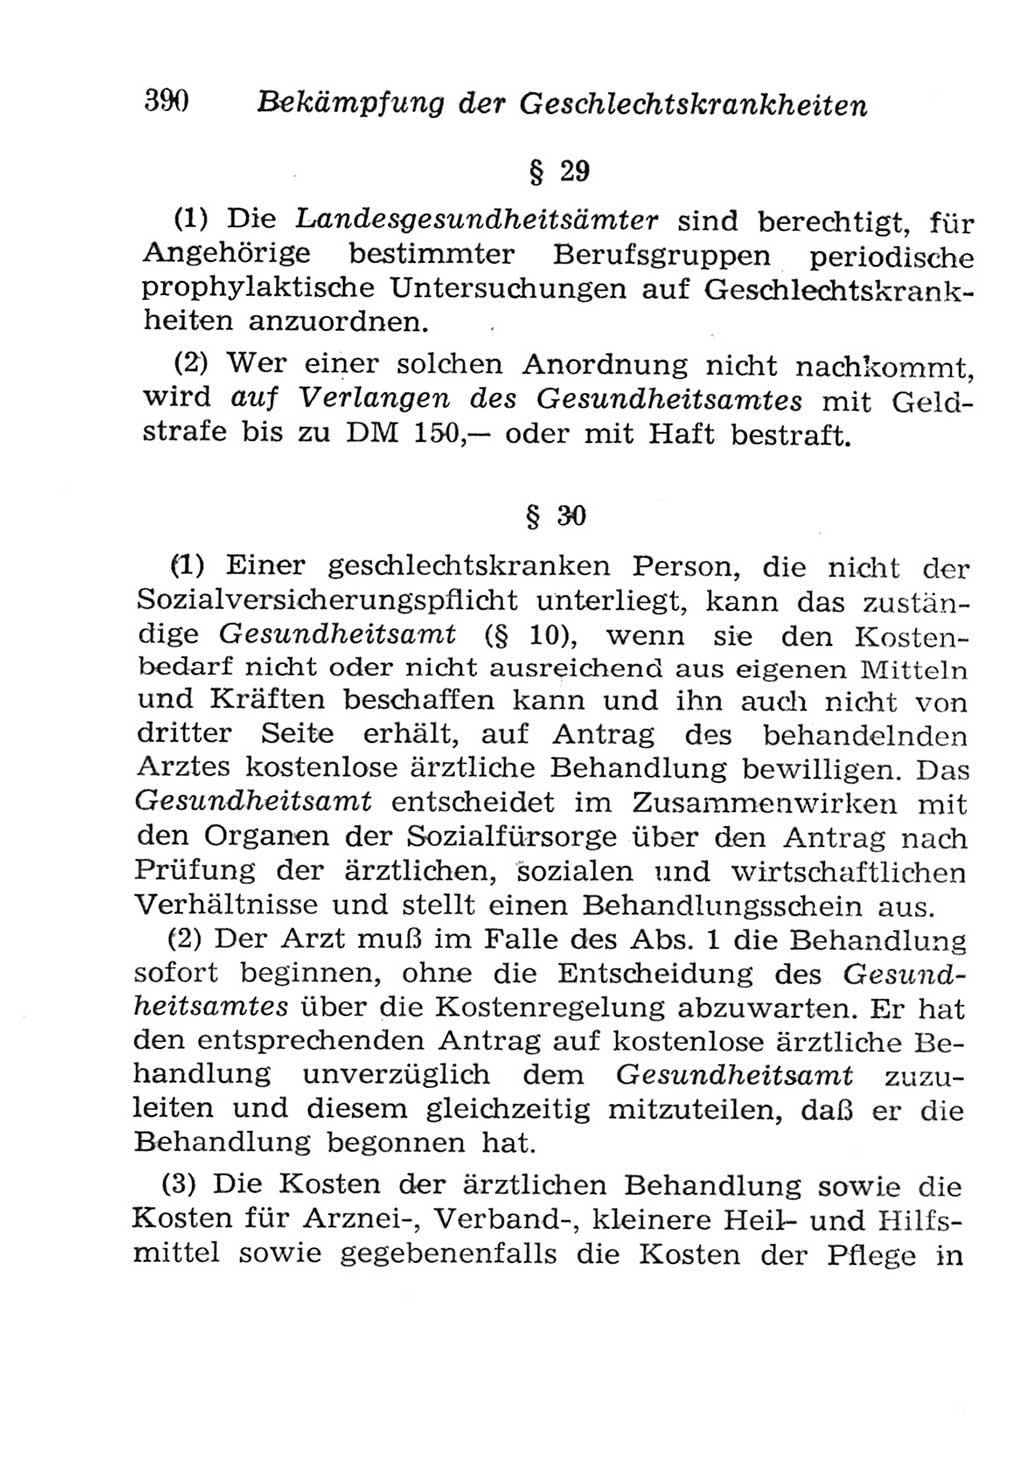 Strafgesetzbuch (StGB) und andere Strafgesetze [Deutsche Demokratische Republik (DDR)] 1957, Seite 390 (StGB Strafges. DDR 1957, S. 390)